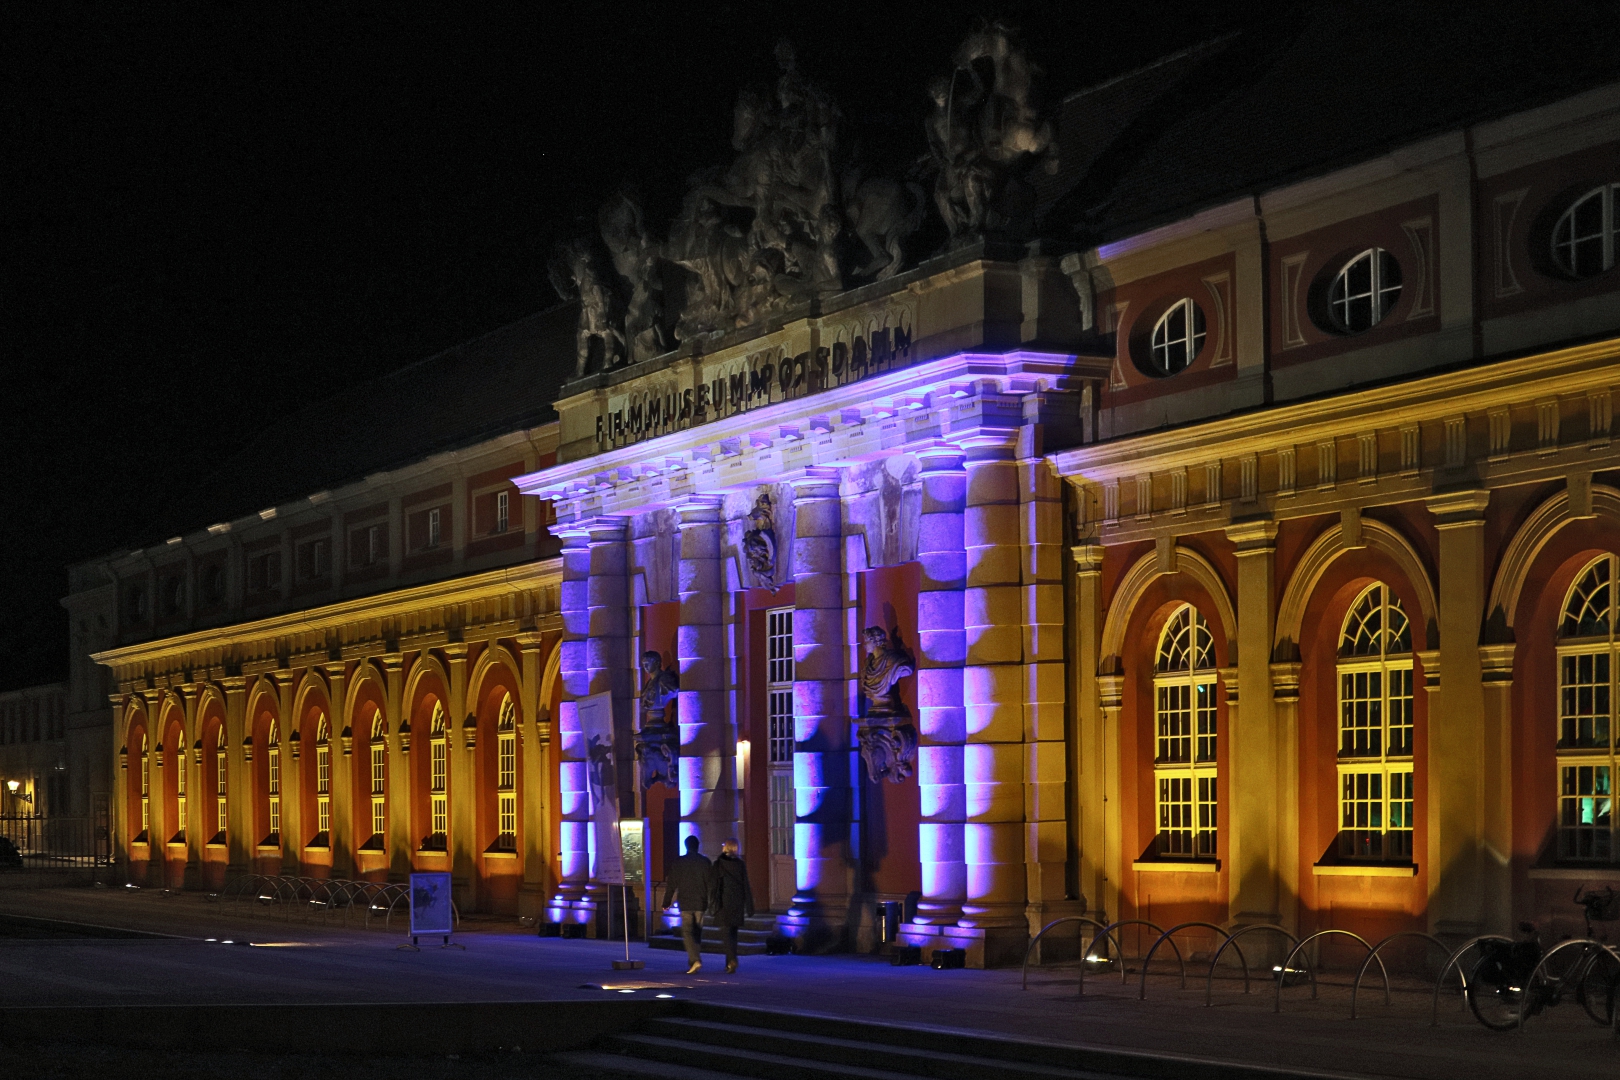 Lichtspektakel in Potsdam (01)